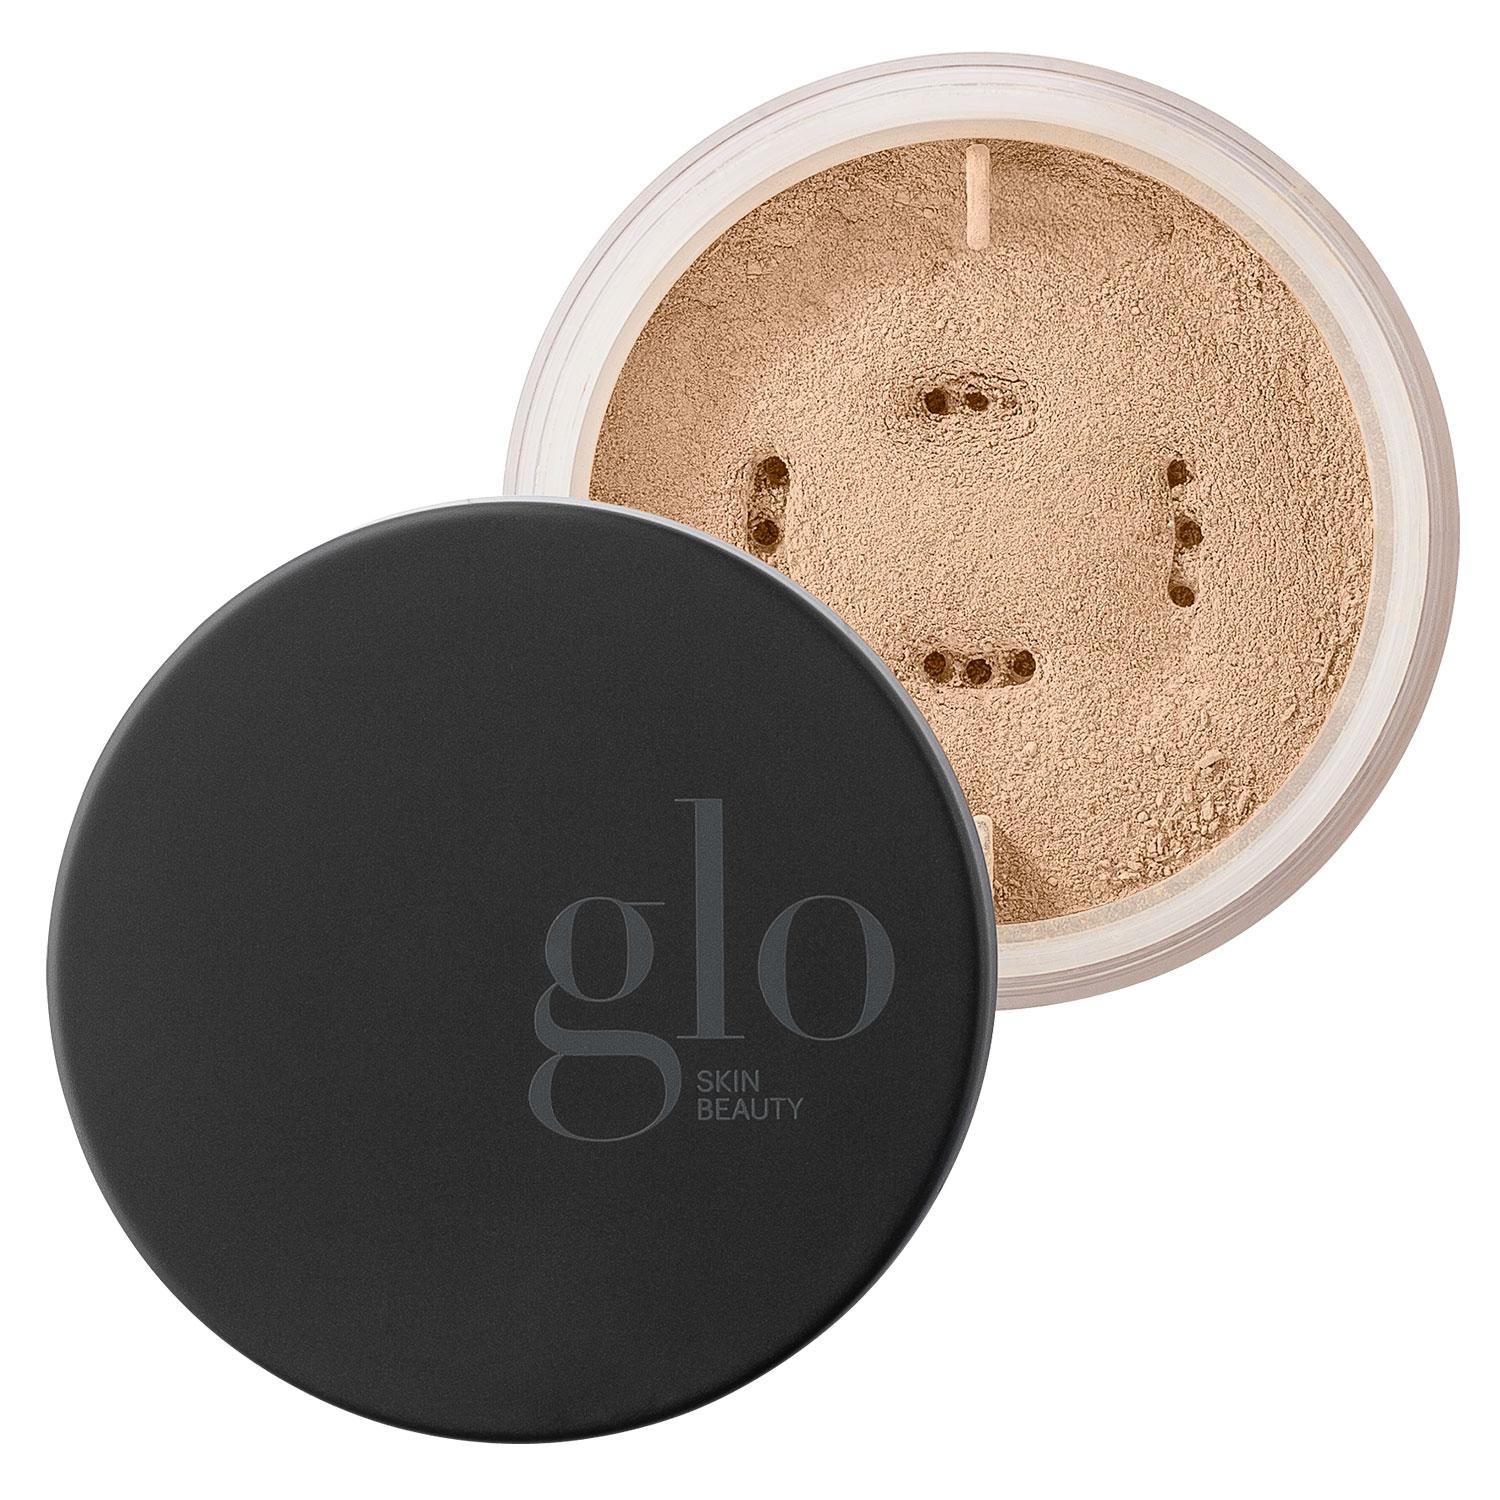 Glo Skin Beauty Powder - Loose Base Natural Medium